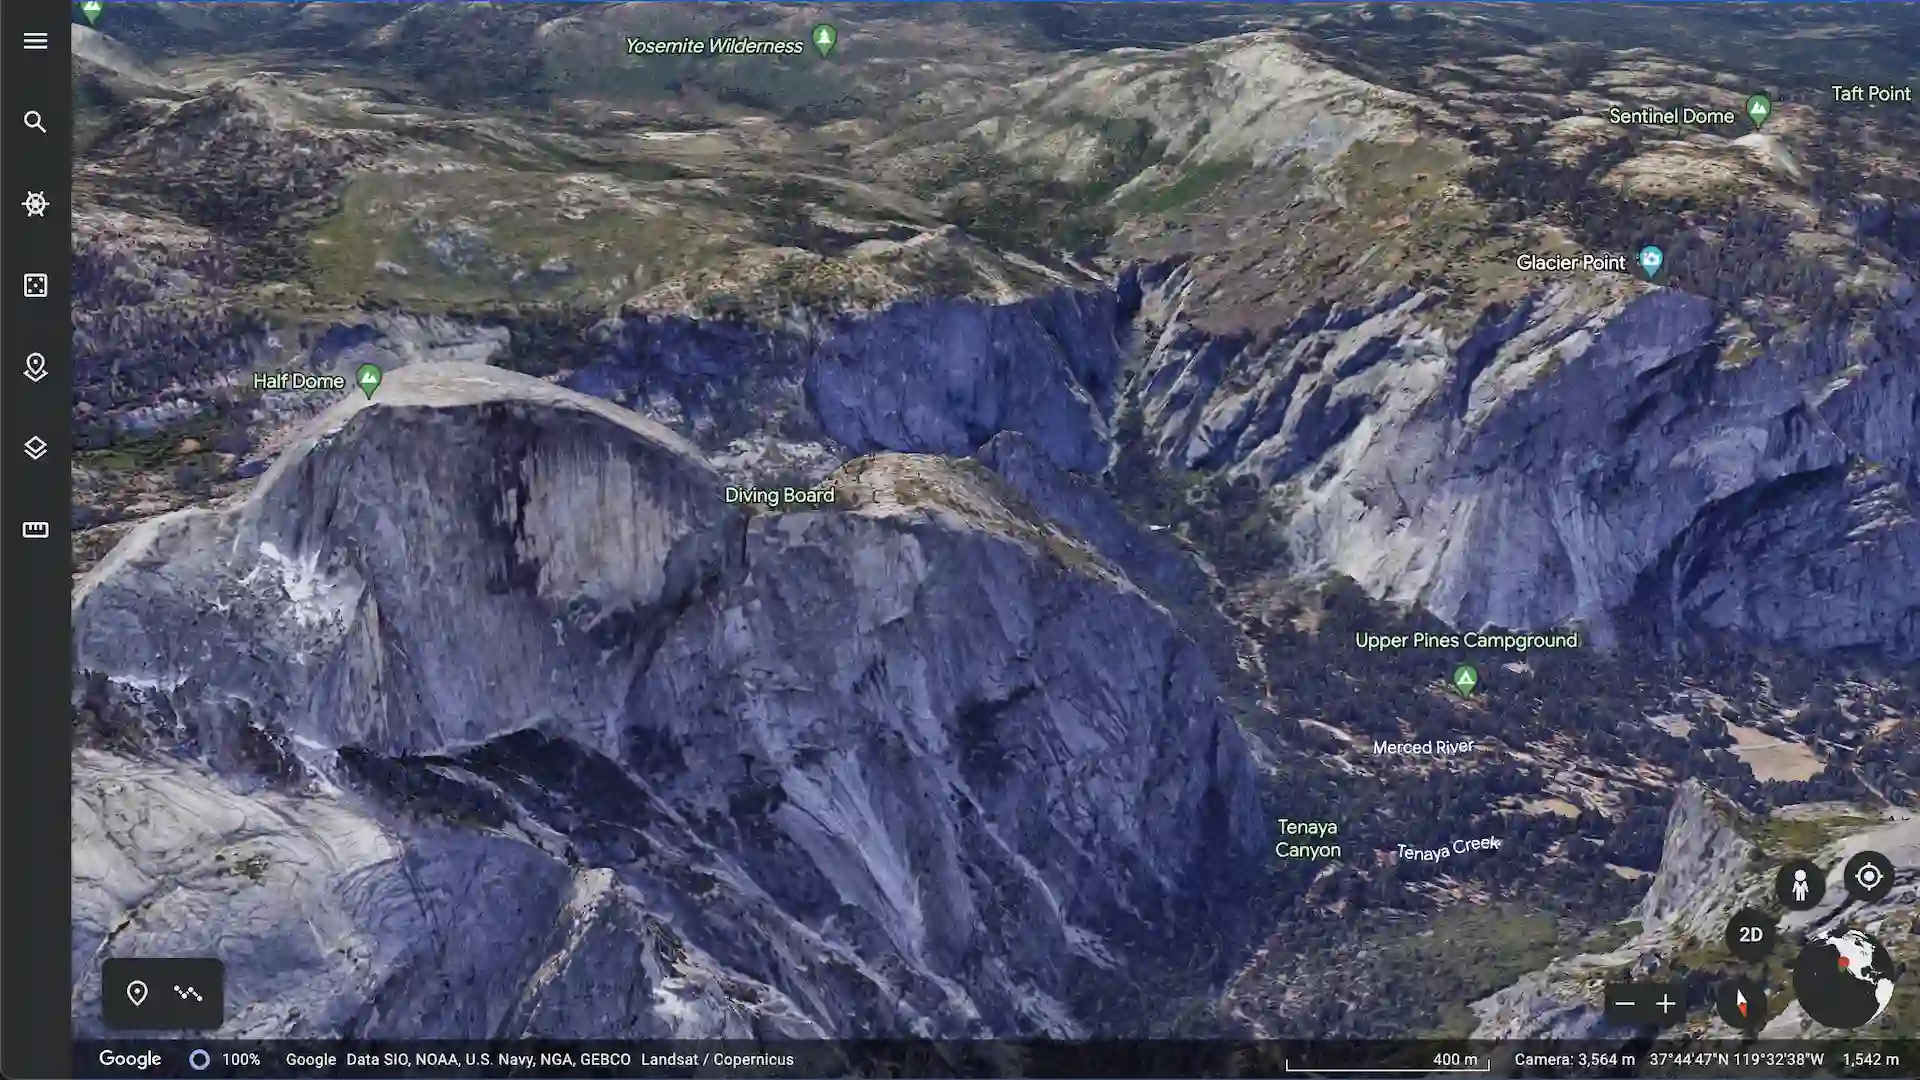 Image de l'interface utilisateur de Google Earth montrant le Half Dome du parc de Yosemite